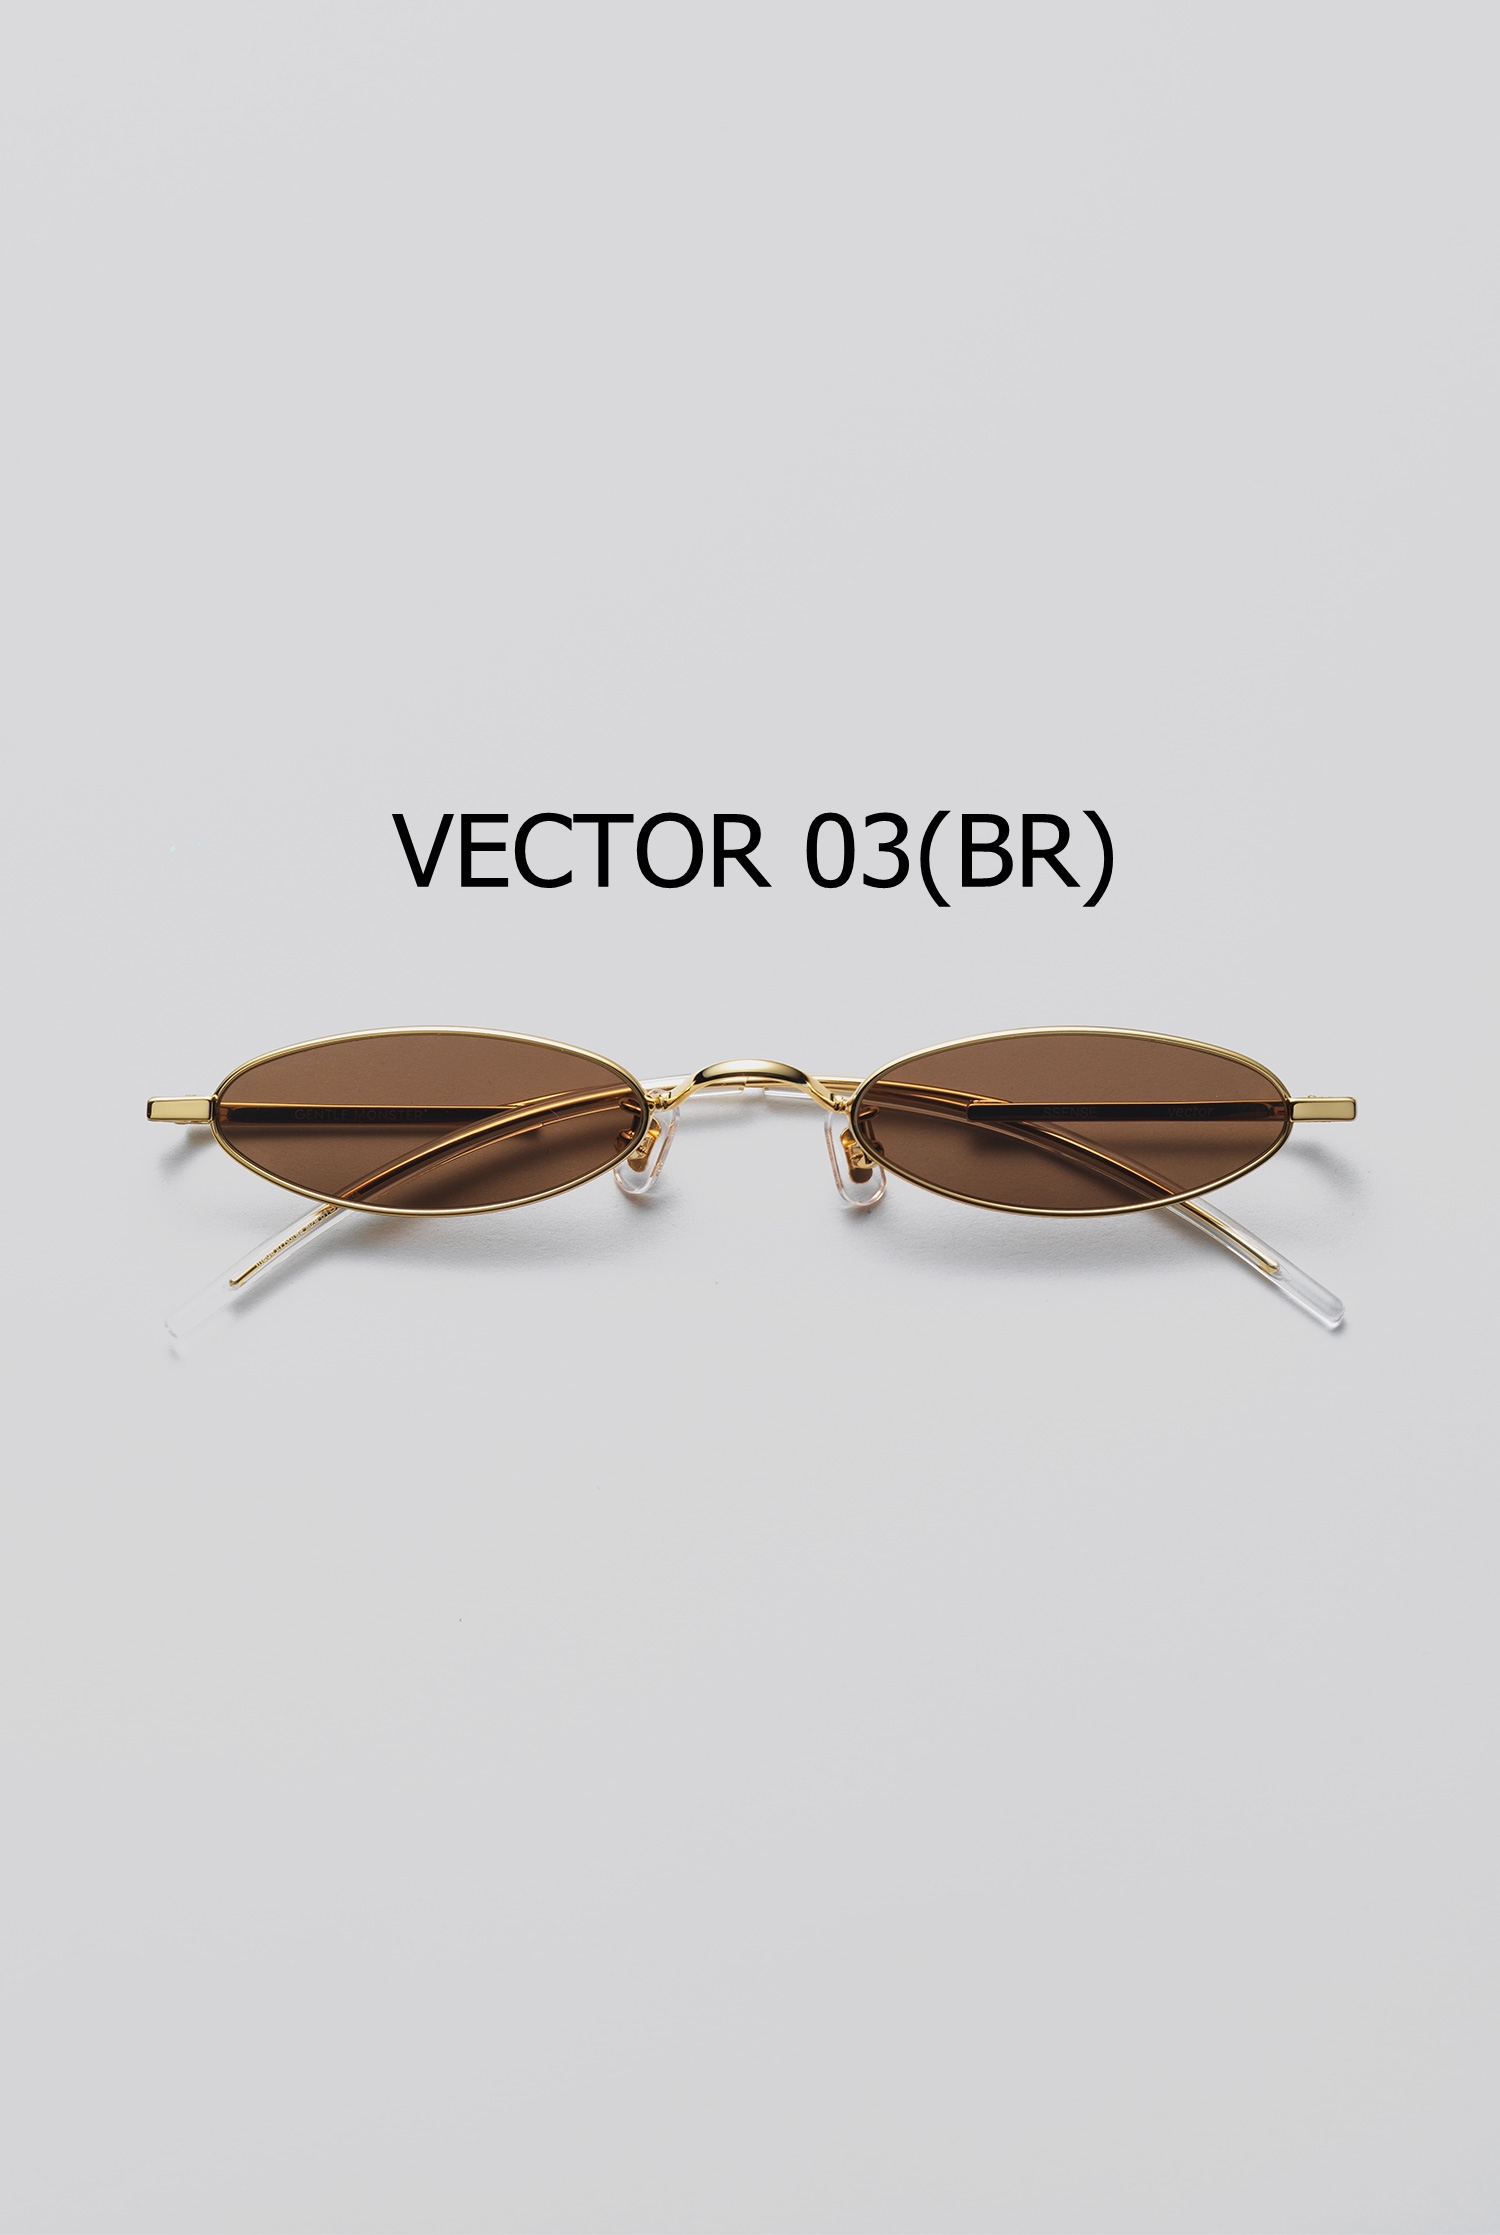 VECTOR 03(BR)